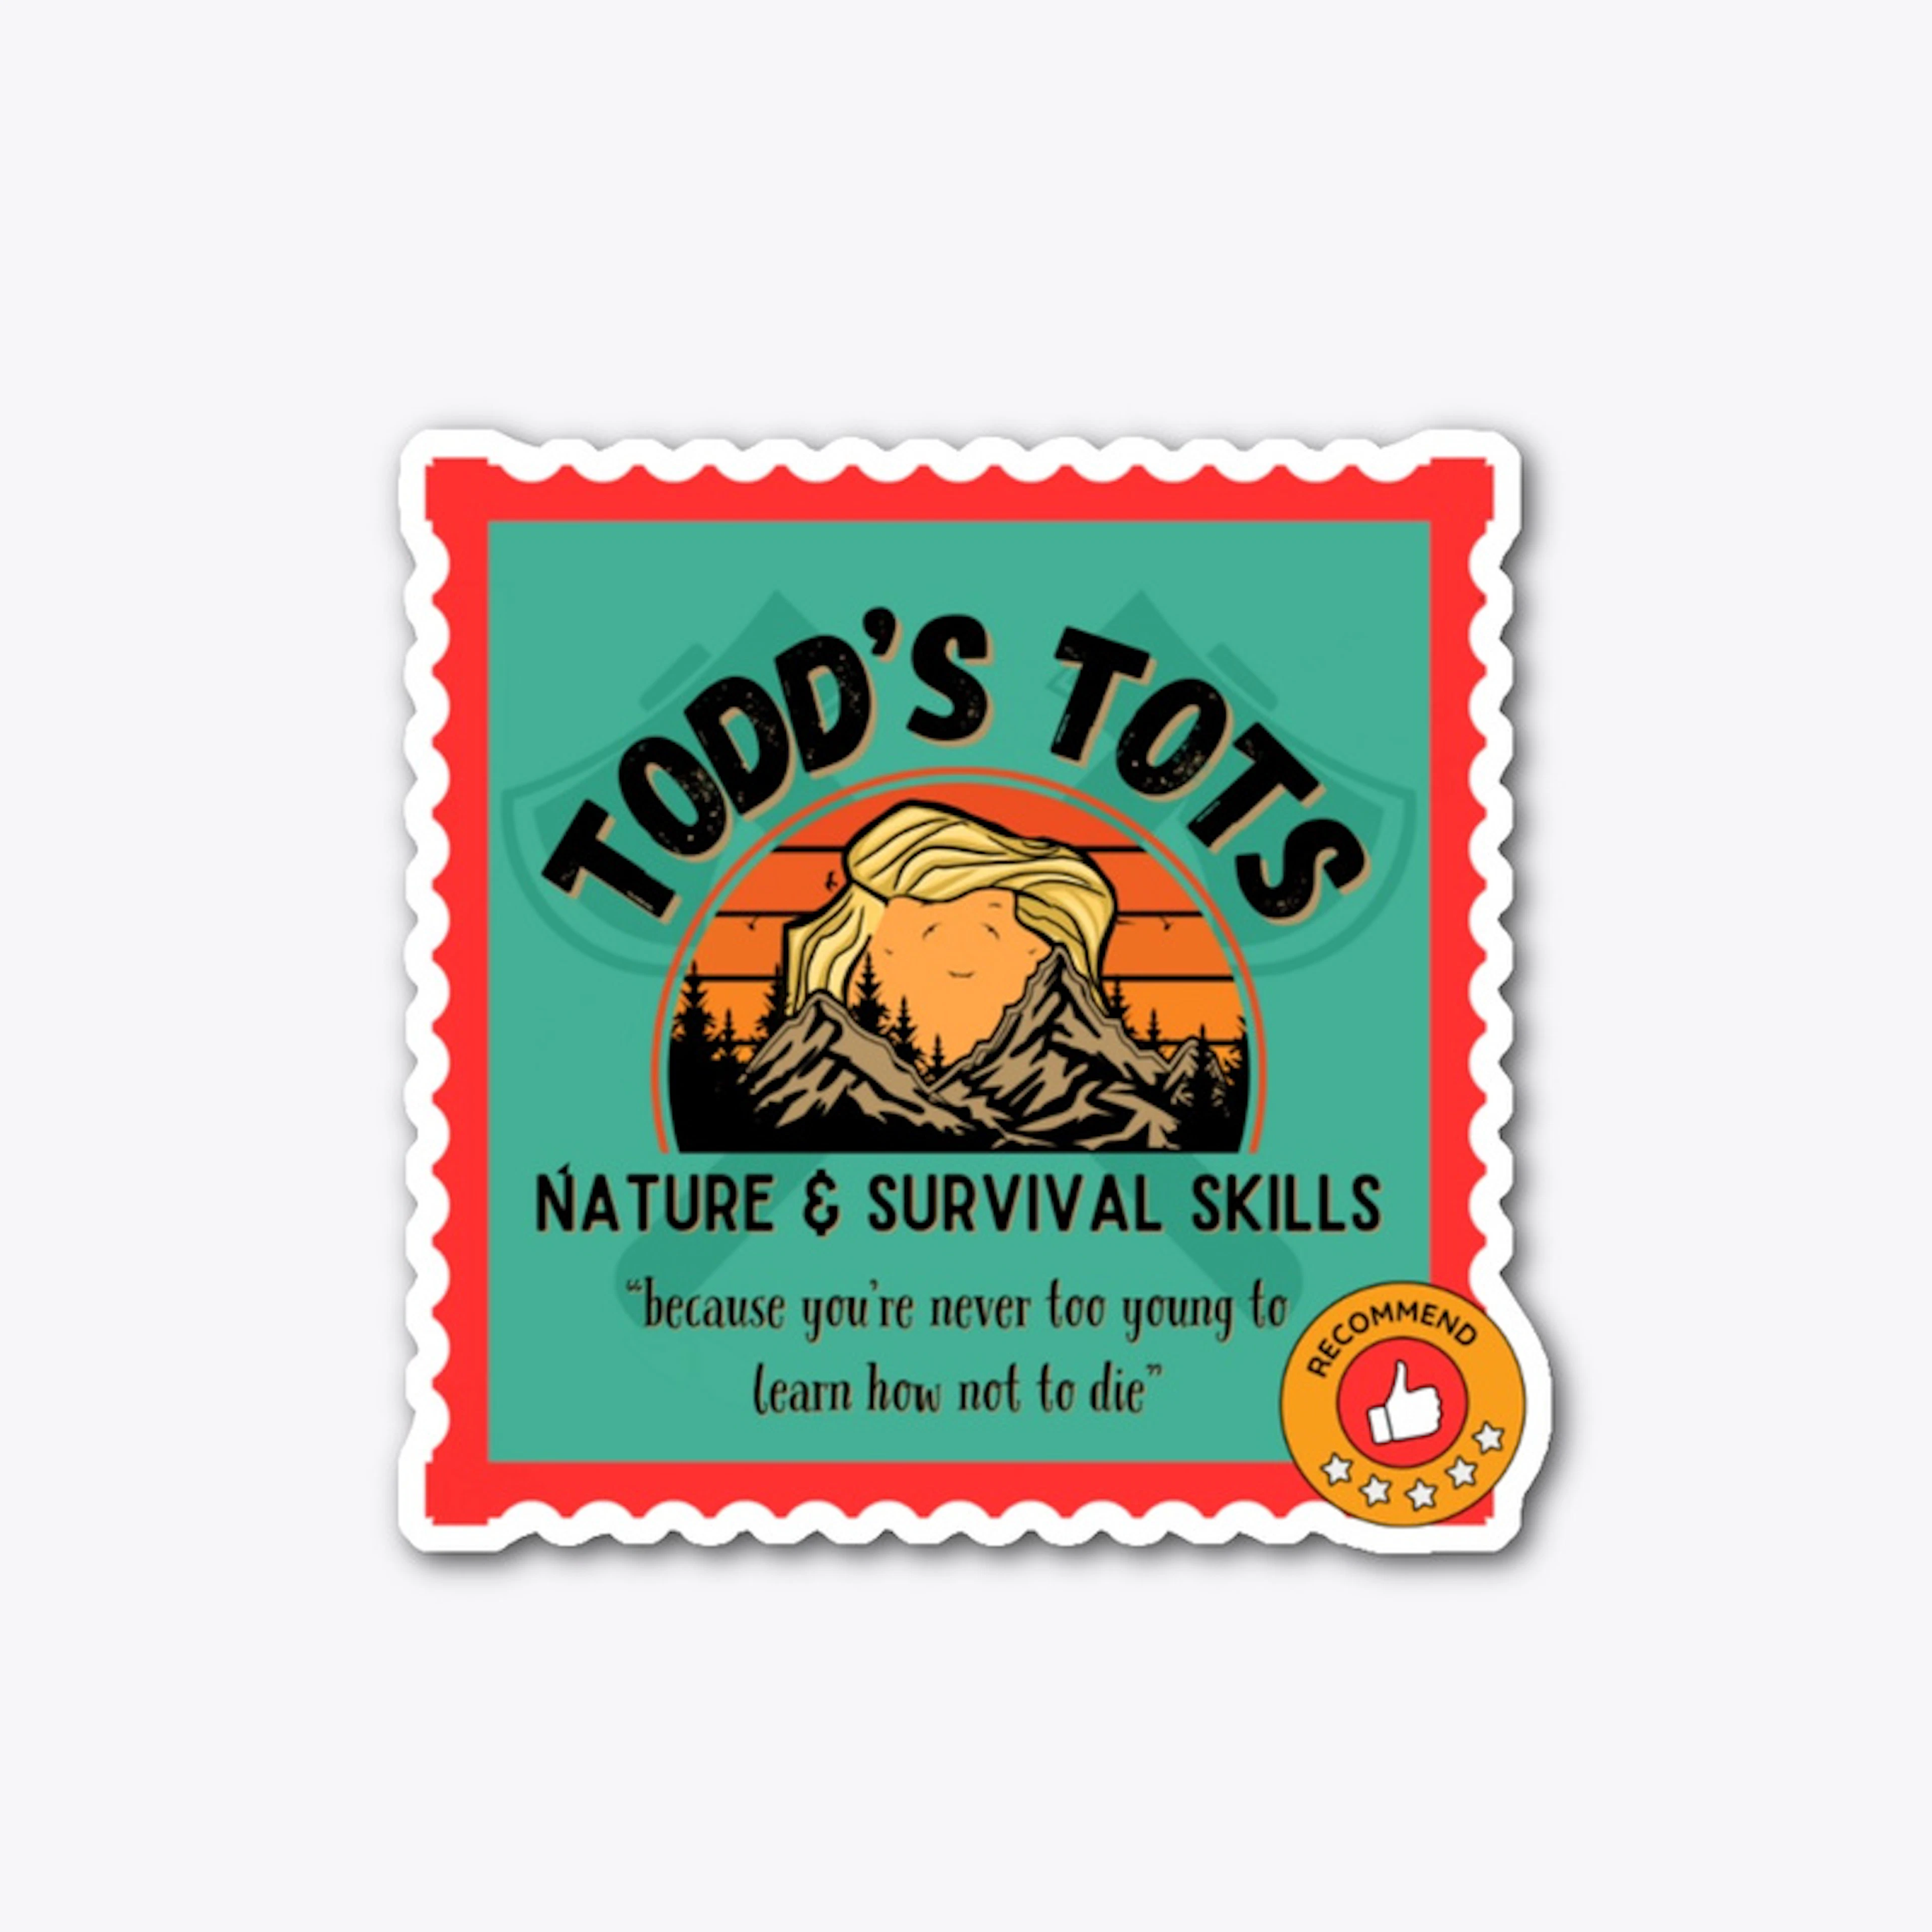 Todd's Tots Logo